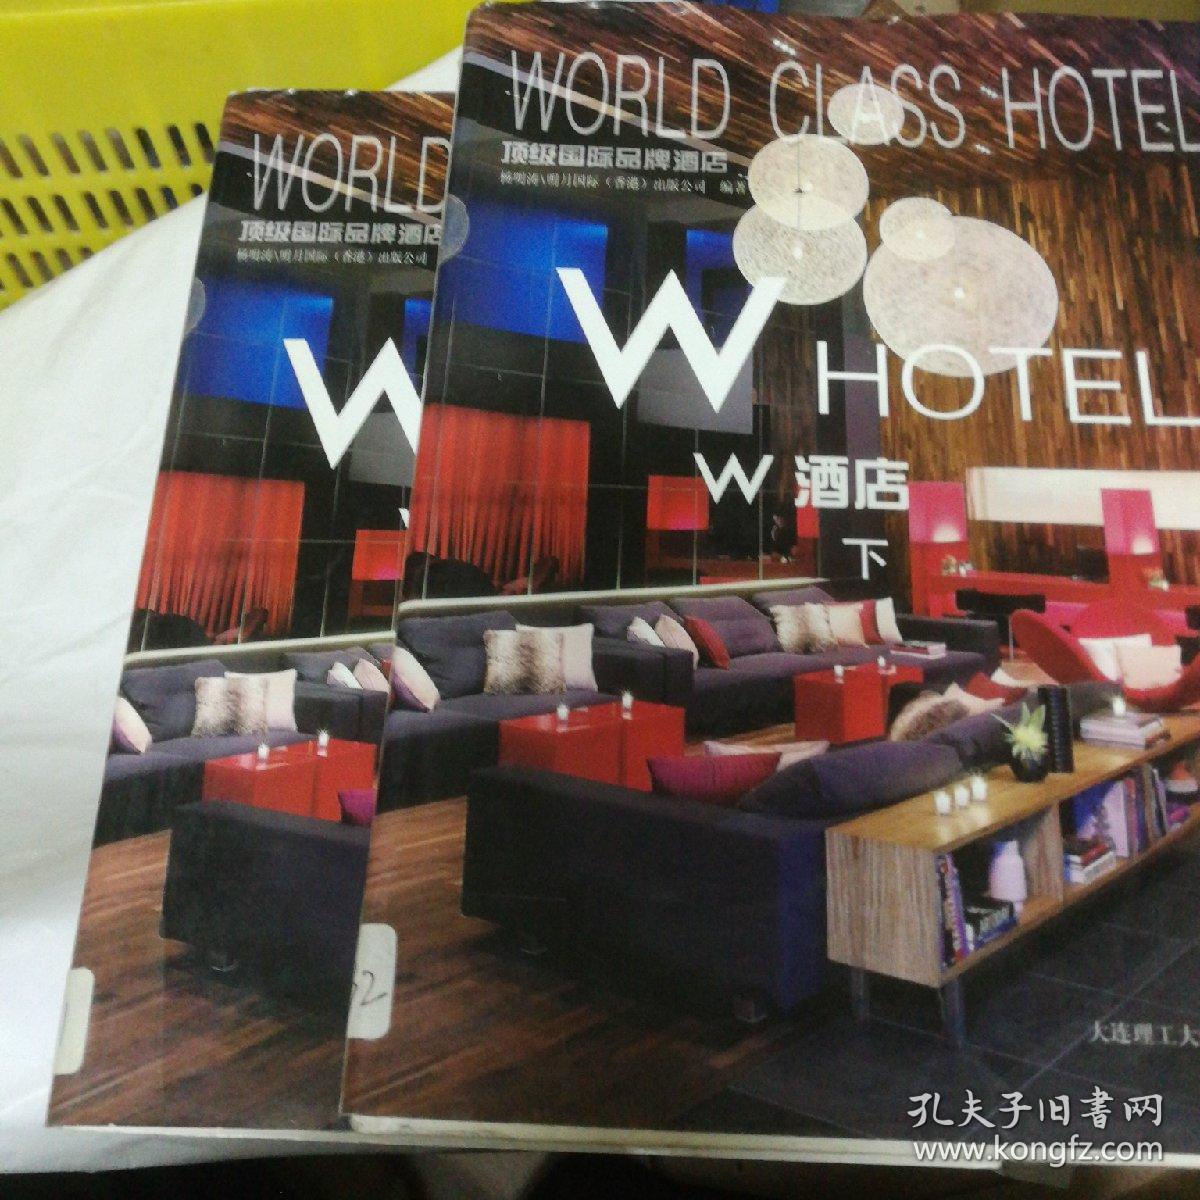 顶级国际品牌酒店—W酒店(上下册)(景观与建筑设计系列)